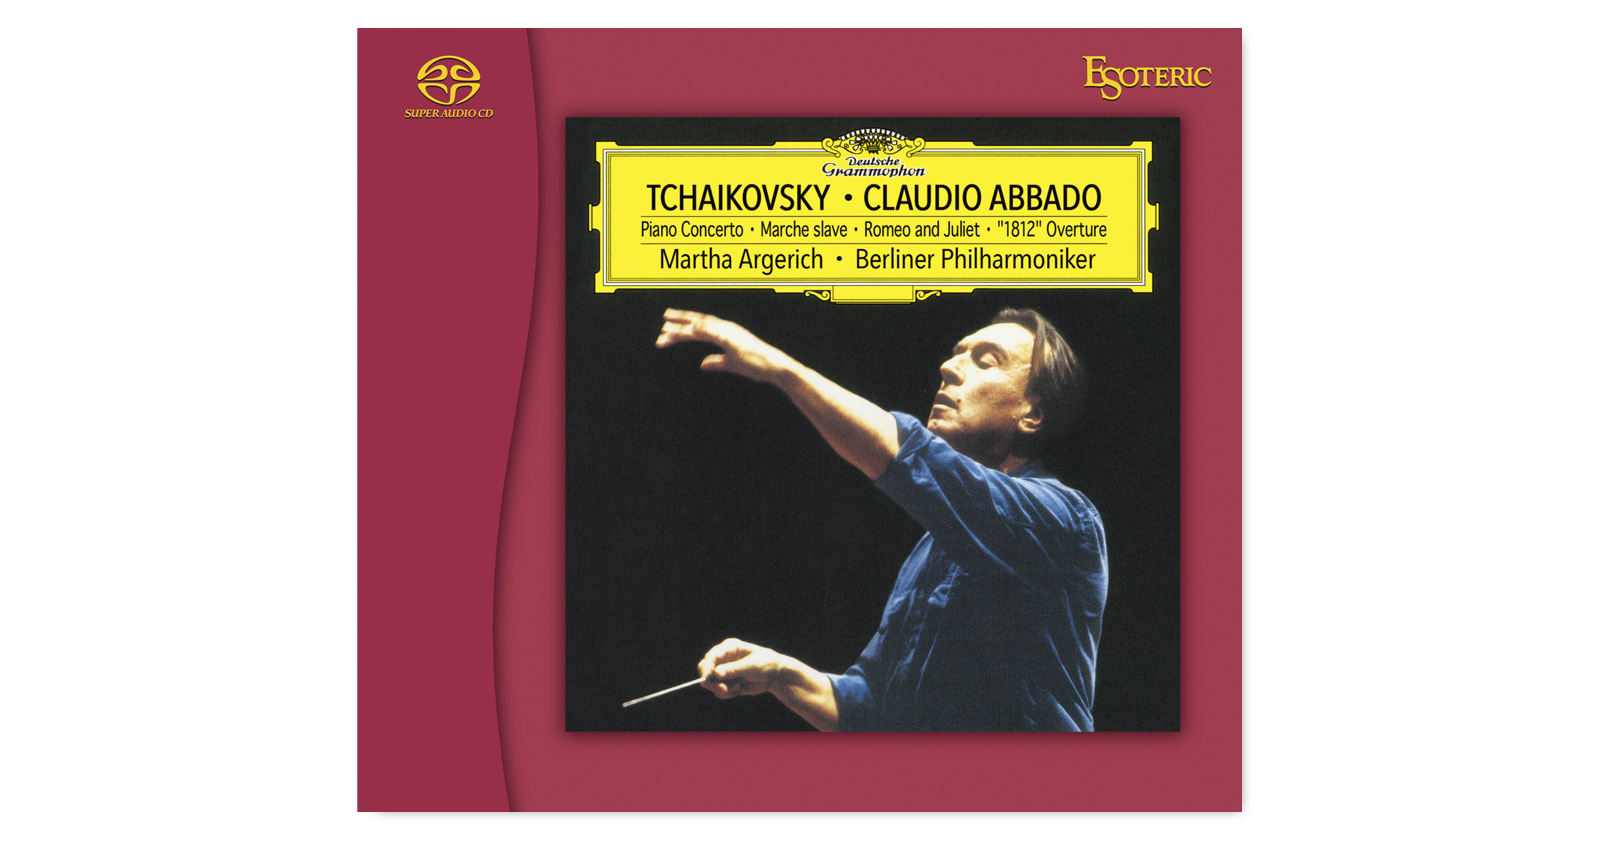 TCHAIKOVSKY Concerto No. 1 ‘1812’ Overture